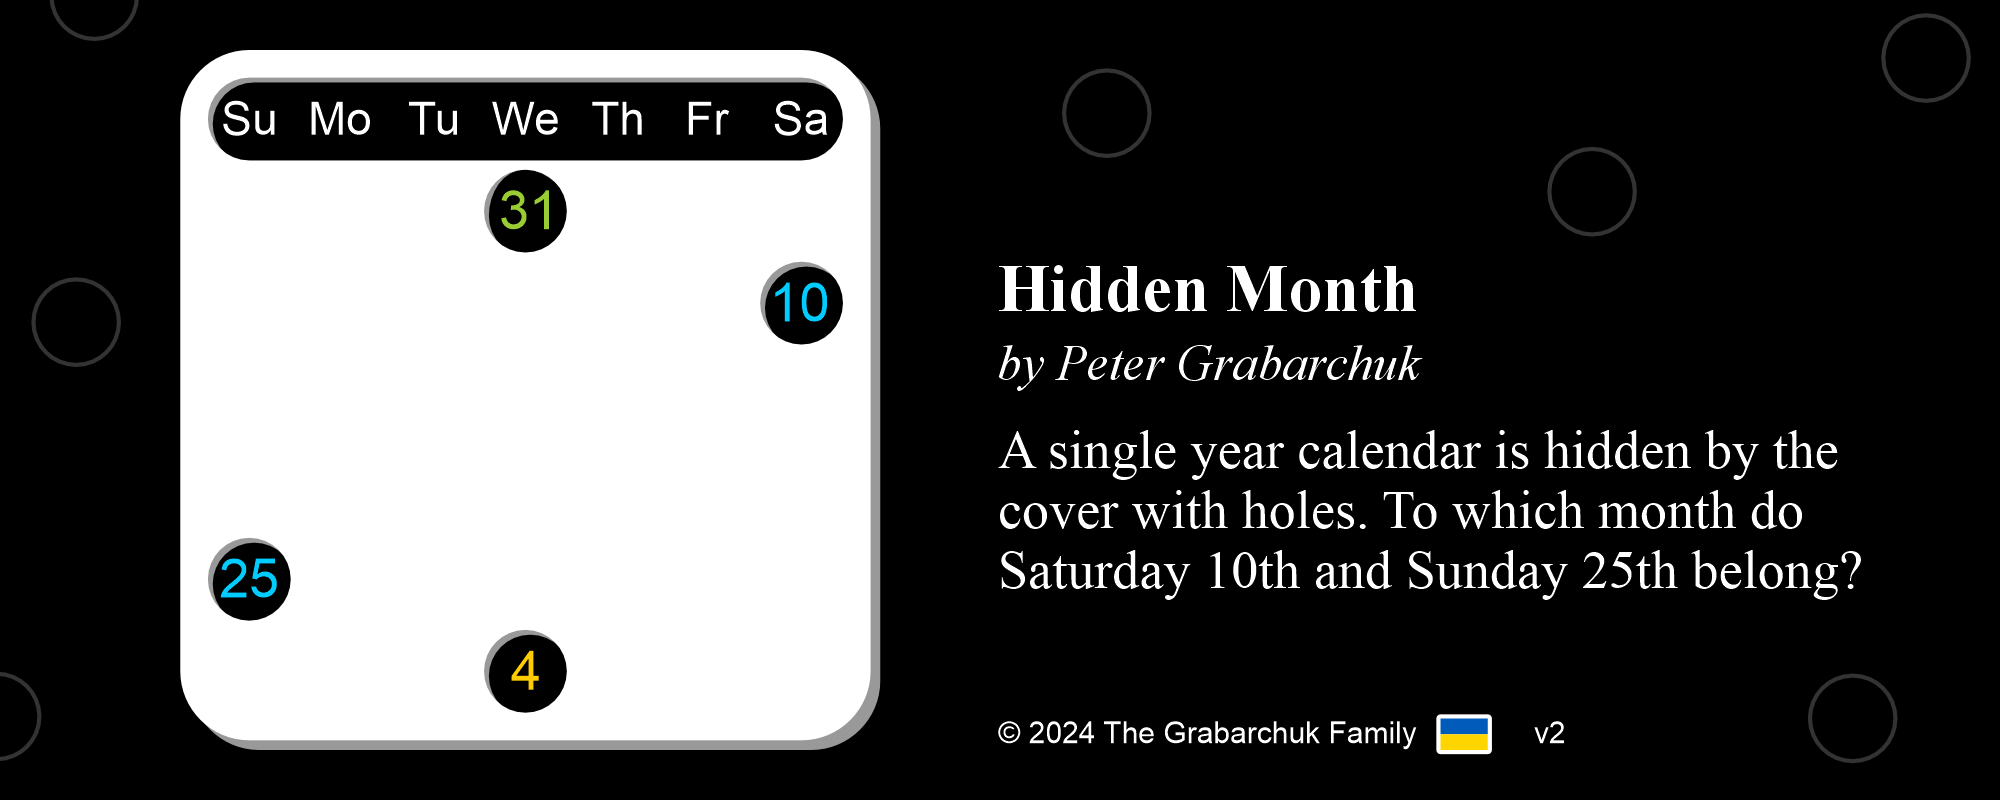 Hidden Month by Peter Grabarchuk